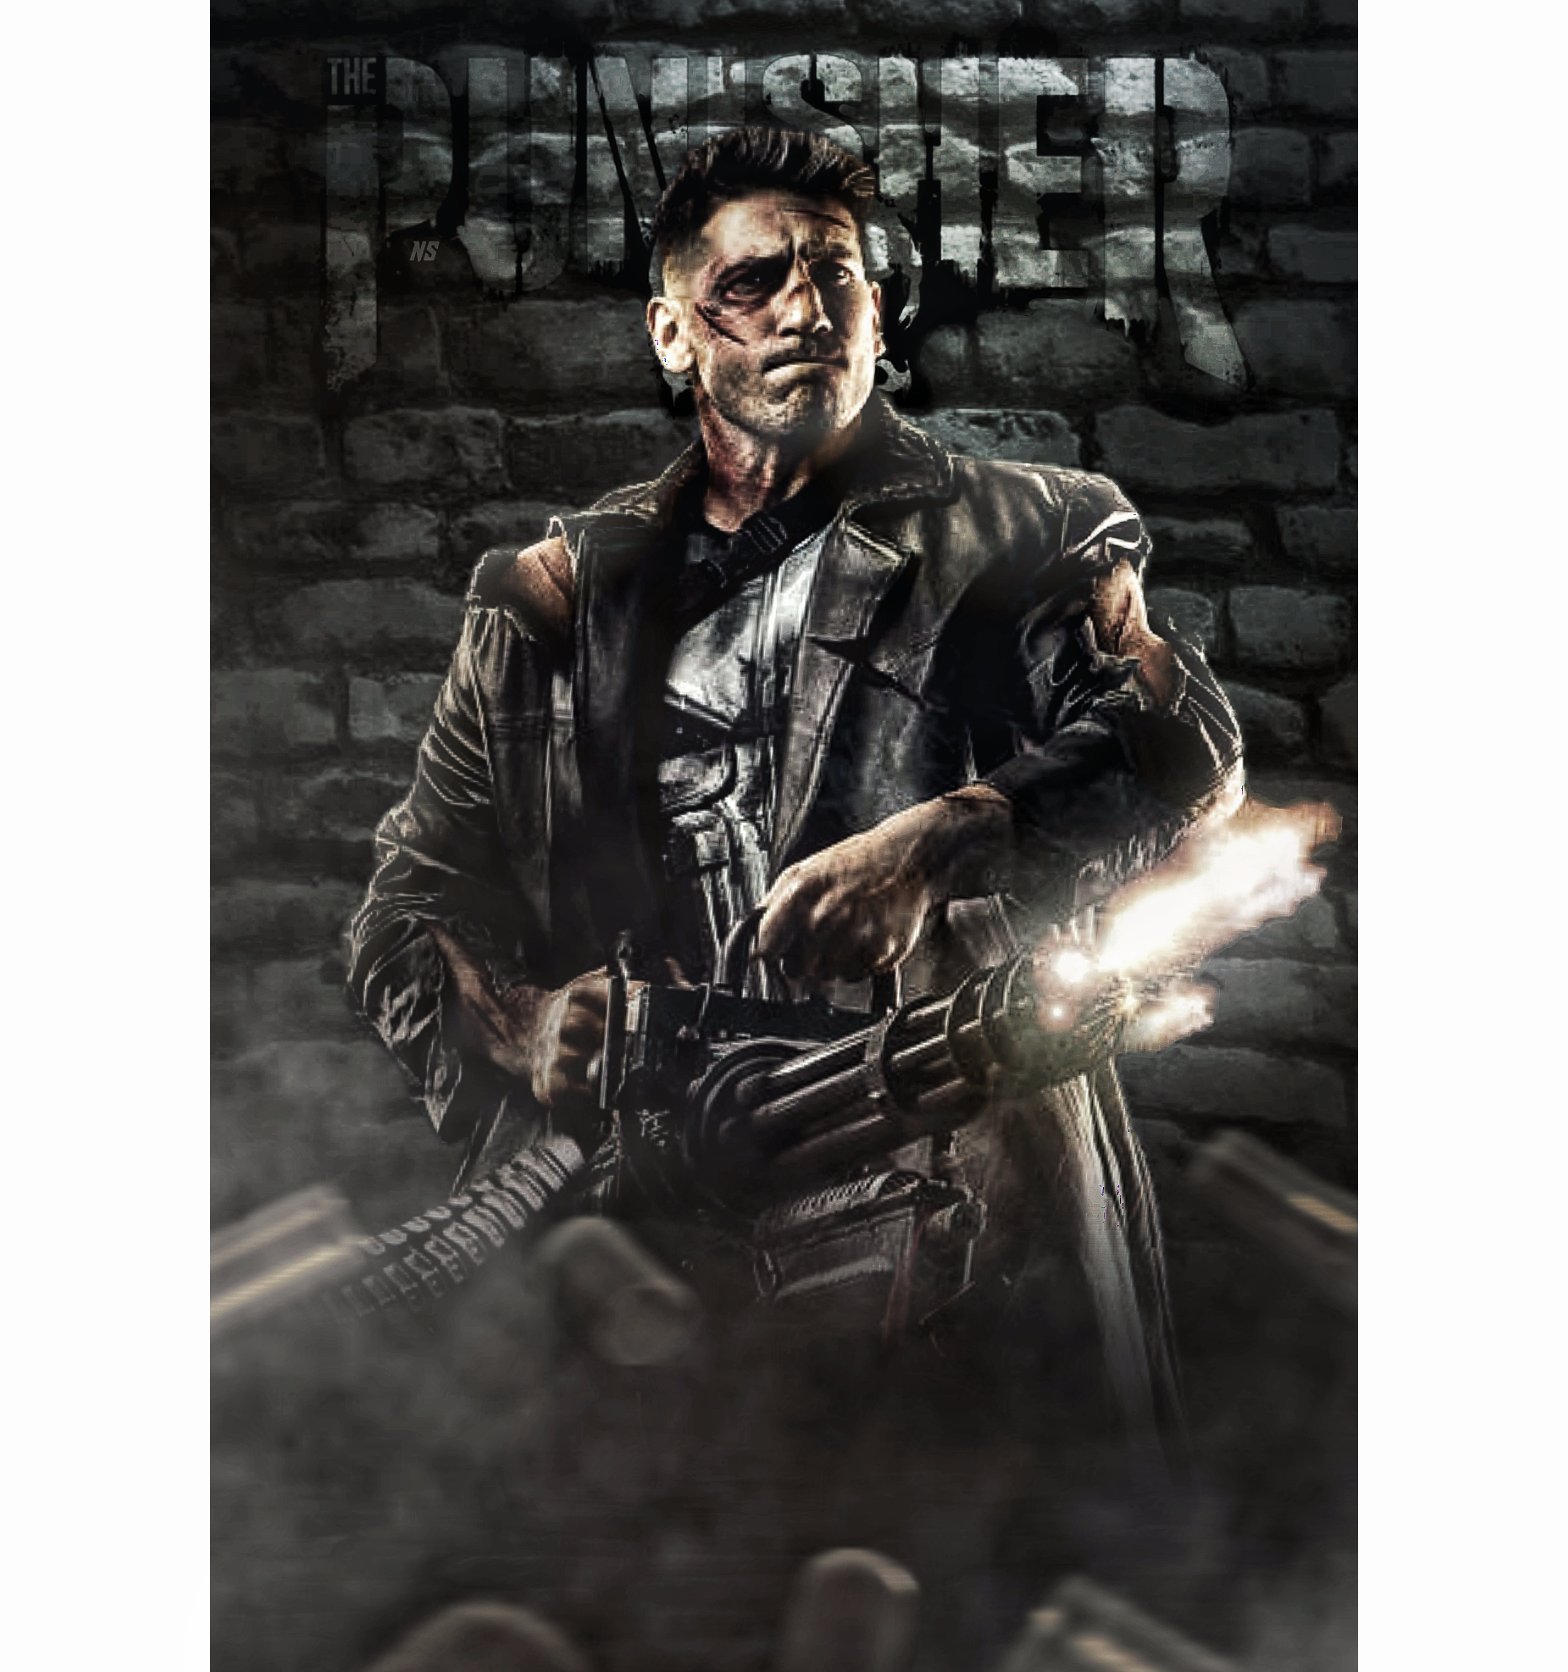 The Punisher Wallpaper by JCTekkSims on DeviantArt